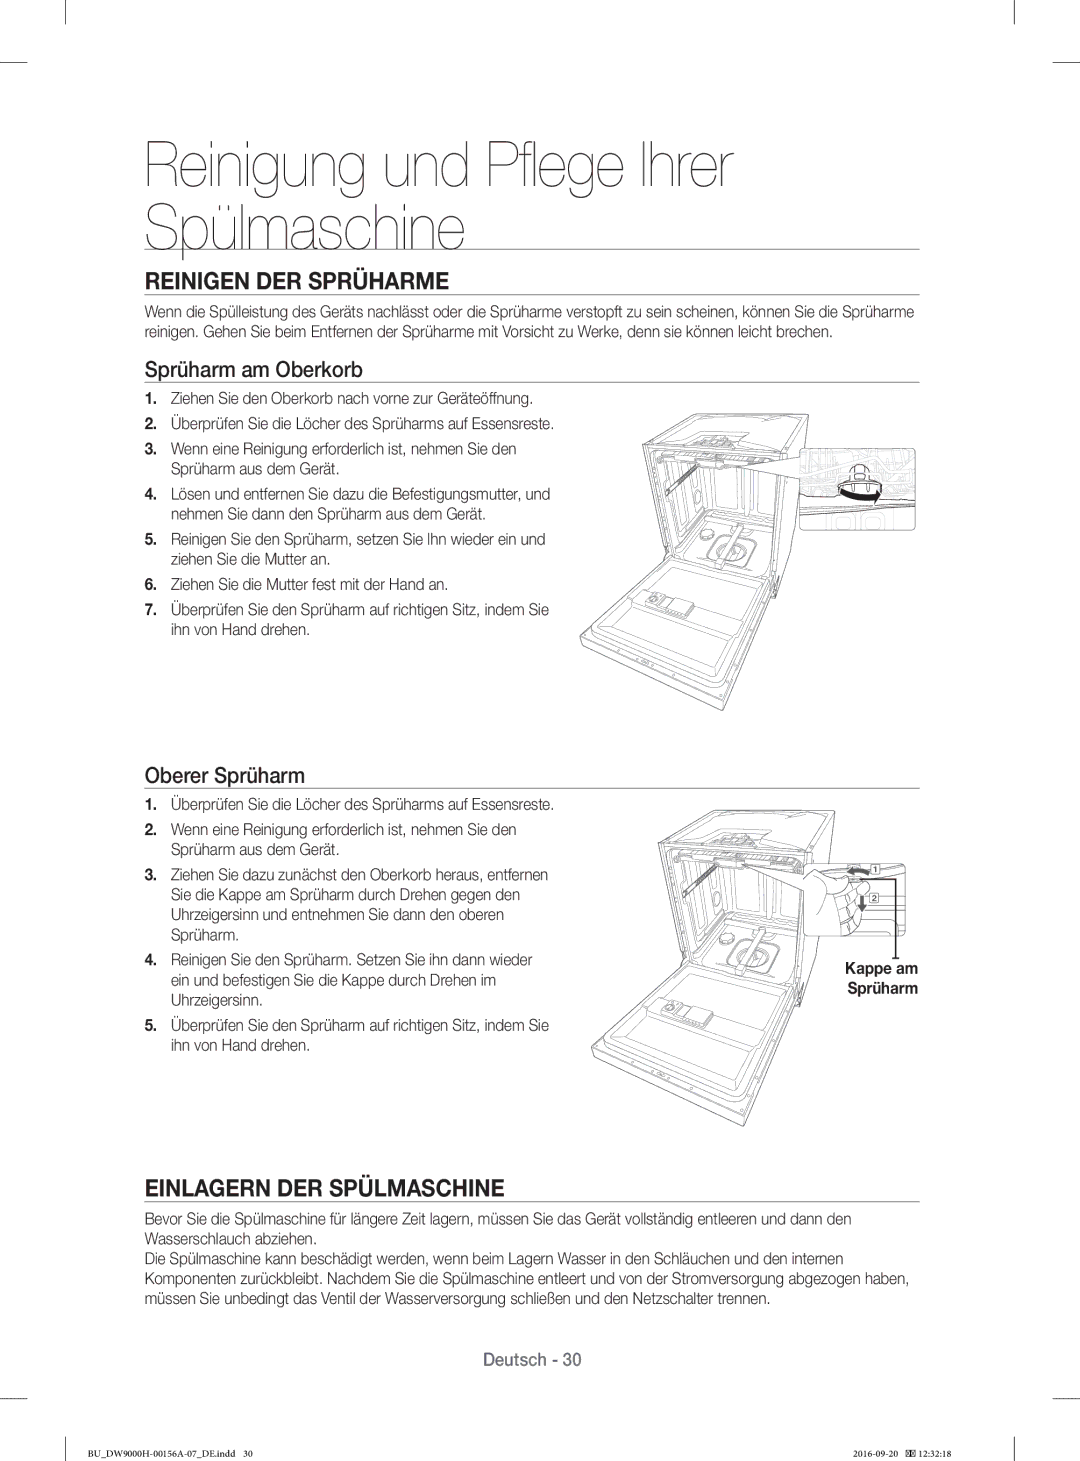 Samsung DW60J9970BB/EG manual Reinigen DER Sprüharme, Einlagern DER Spülmaschine, Sprüharm am Oberkorb, Oberer Sprüharm 